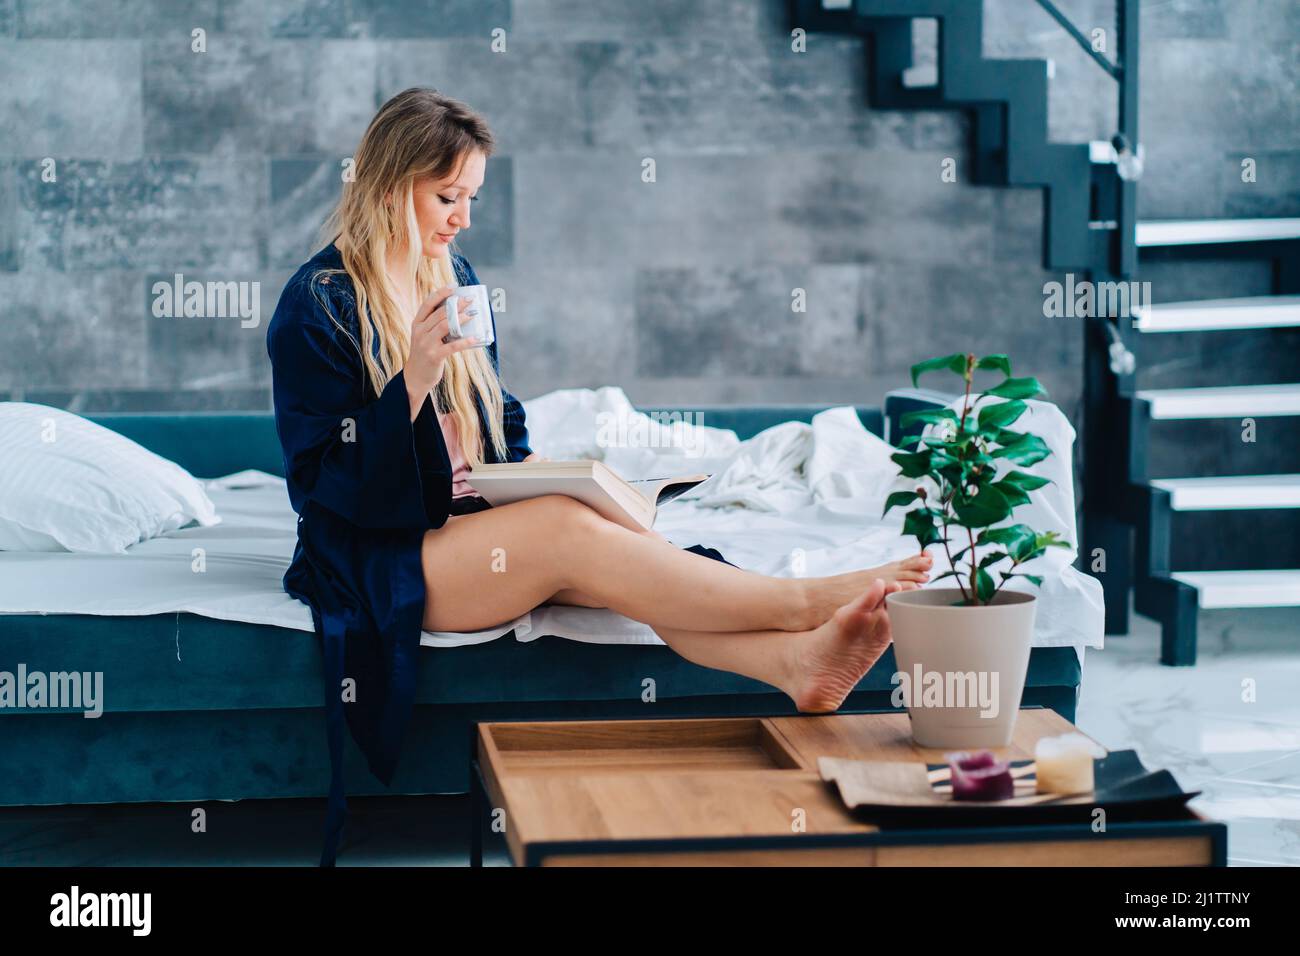 Vue latérale de la jeune femme merveilleuse assise avec des jambes croisées sur le canapé, portant robe de chambre, livre de lecture, tenir une tasse. Banque D'Images